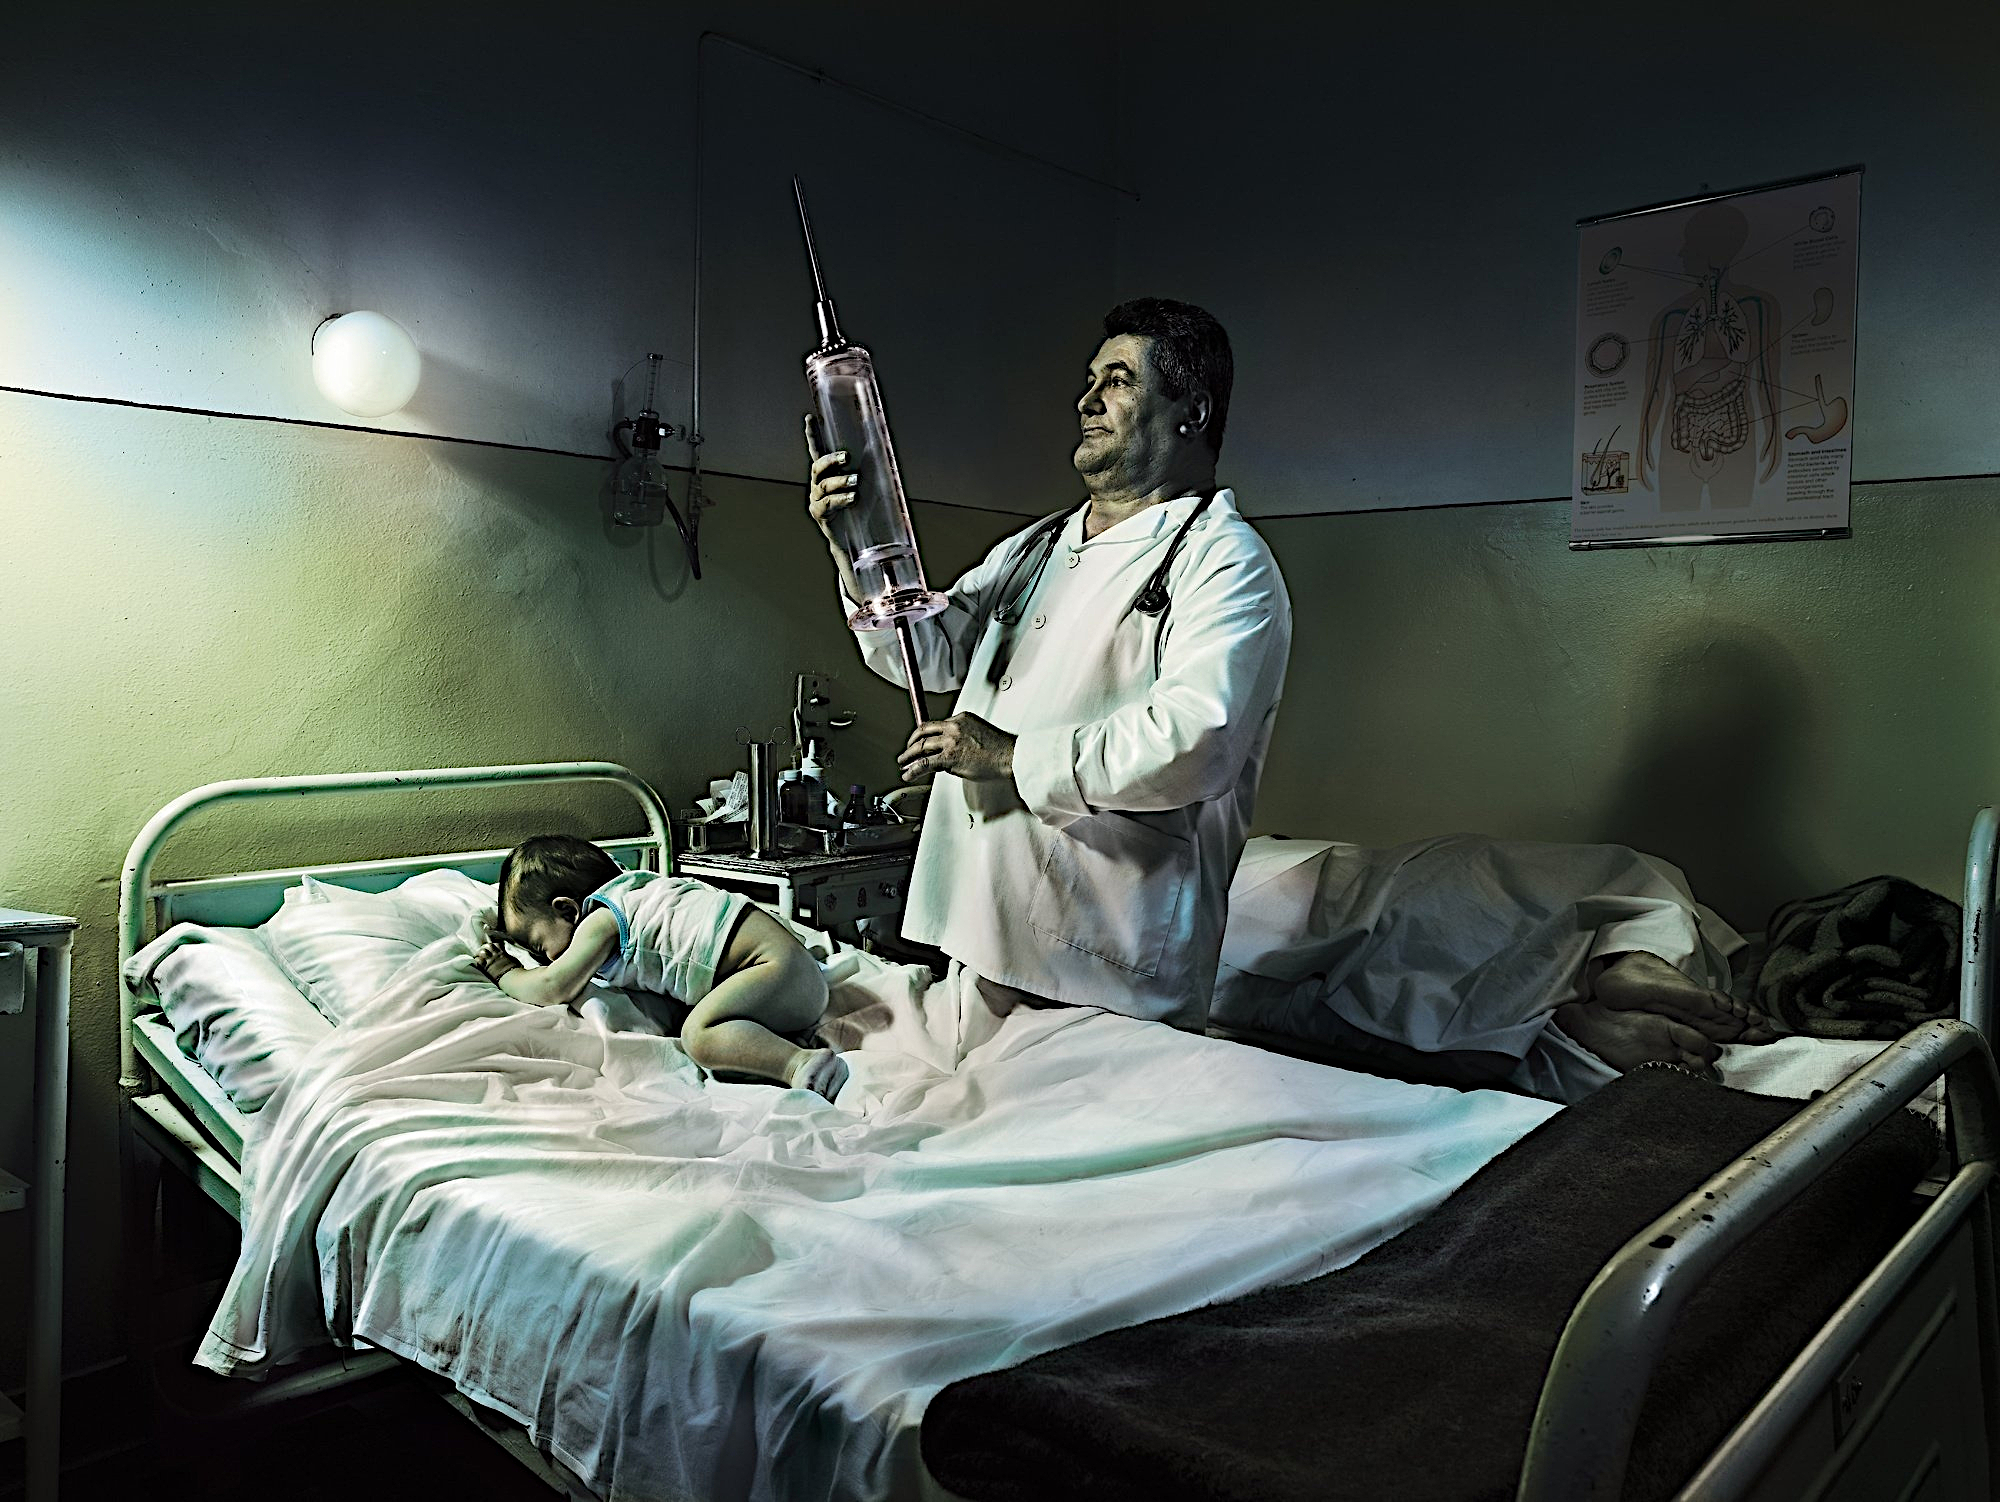 Фото доктор, больница, пациент, прикол, юмор - бесплатные картинки на Fonwall